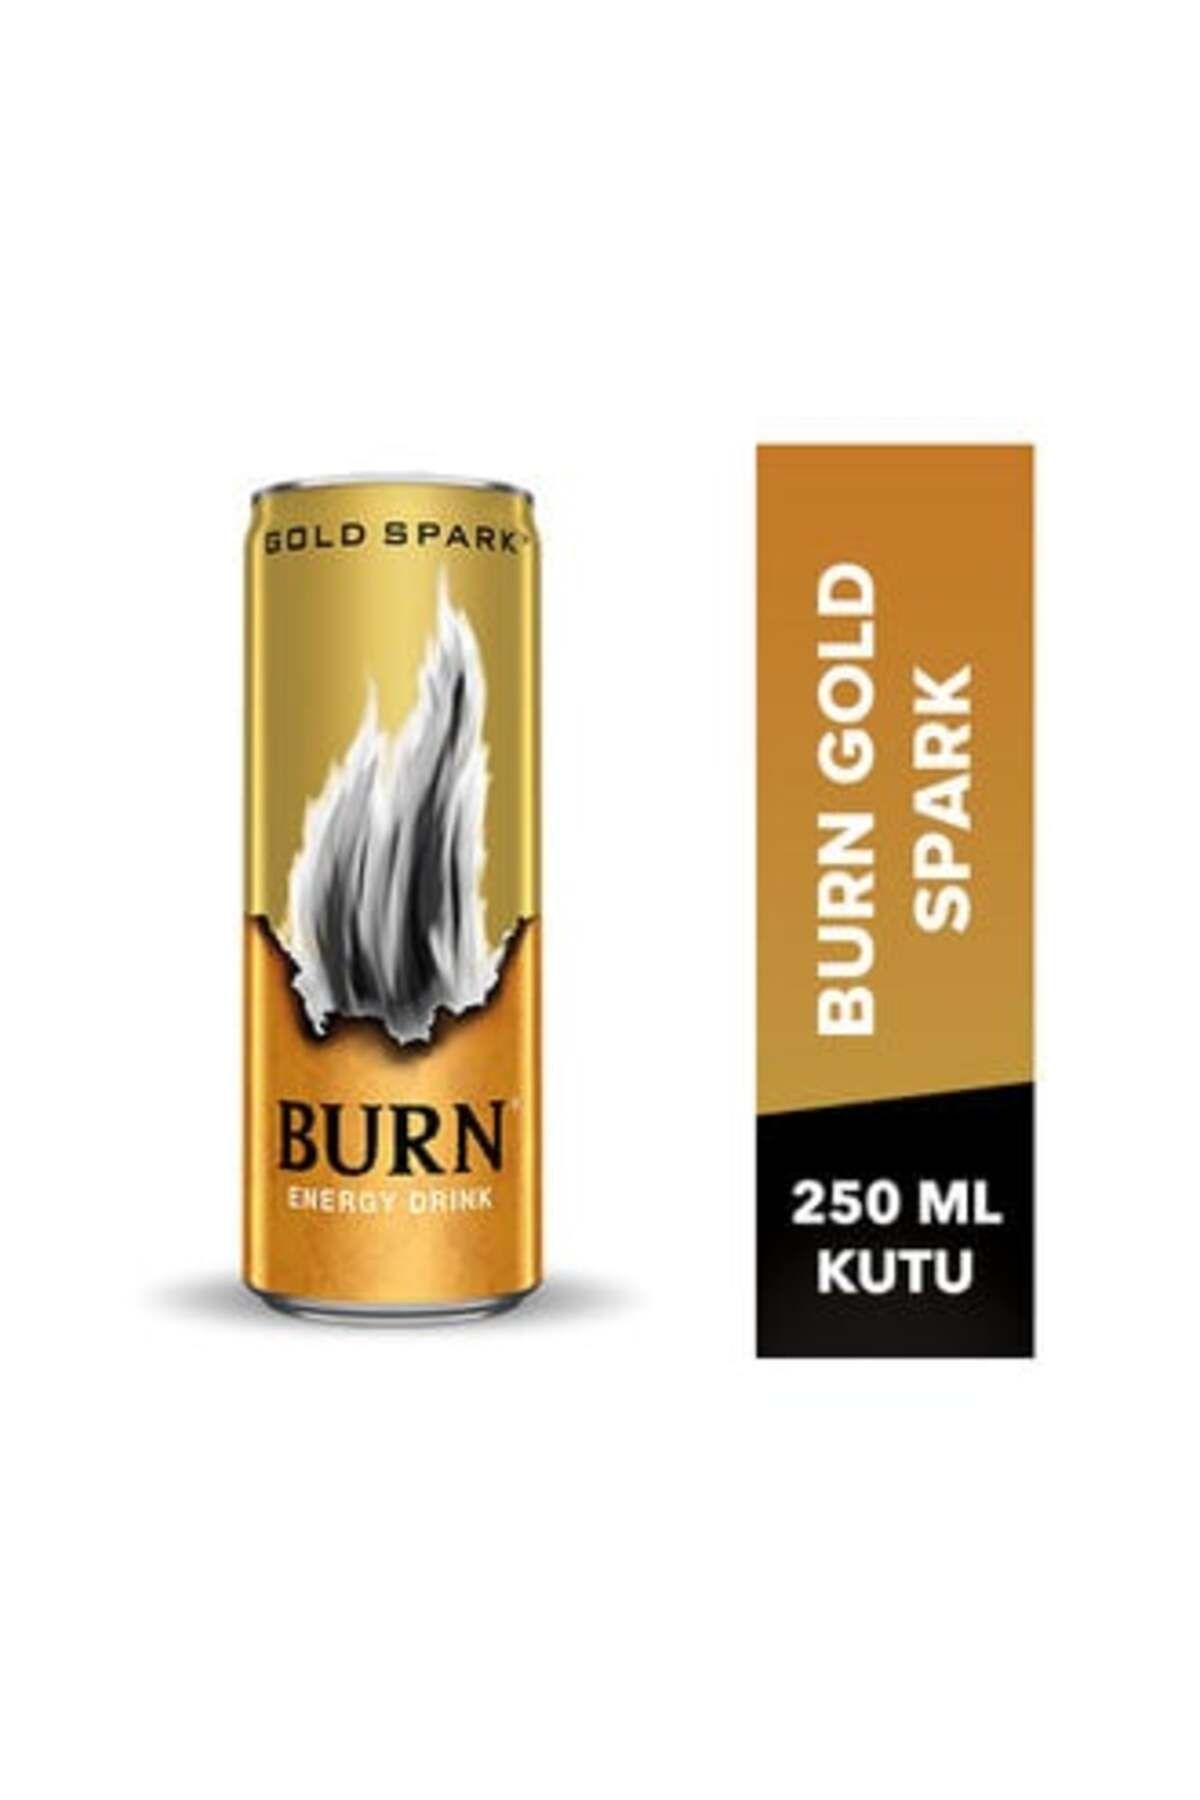 Burn Gold Spark Enerji İçeceği 250 Ml ( 1 ADET )